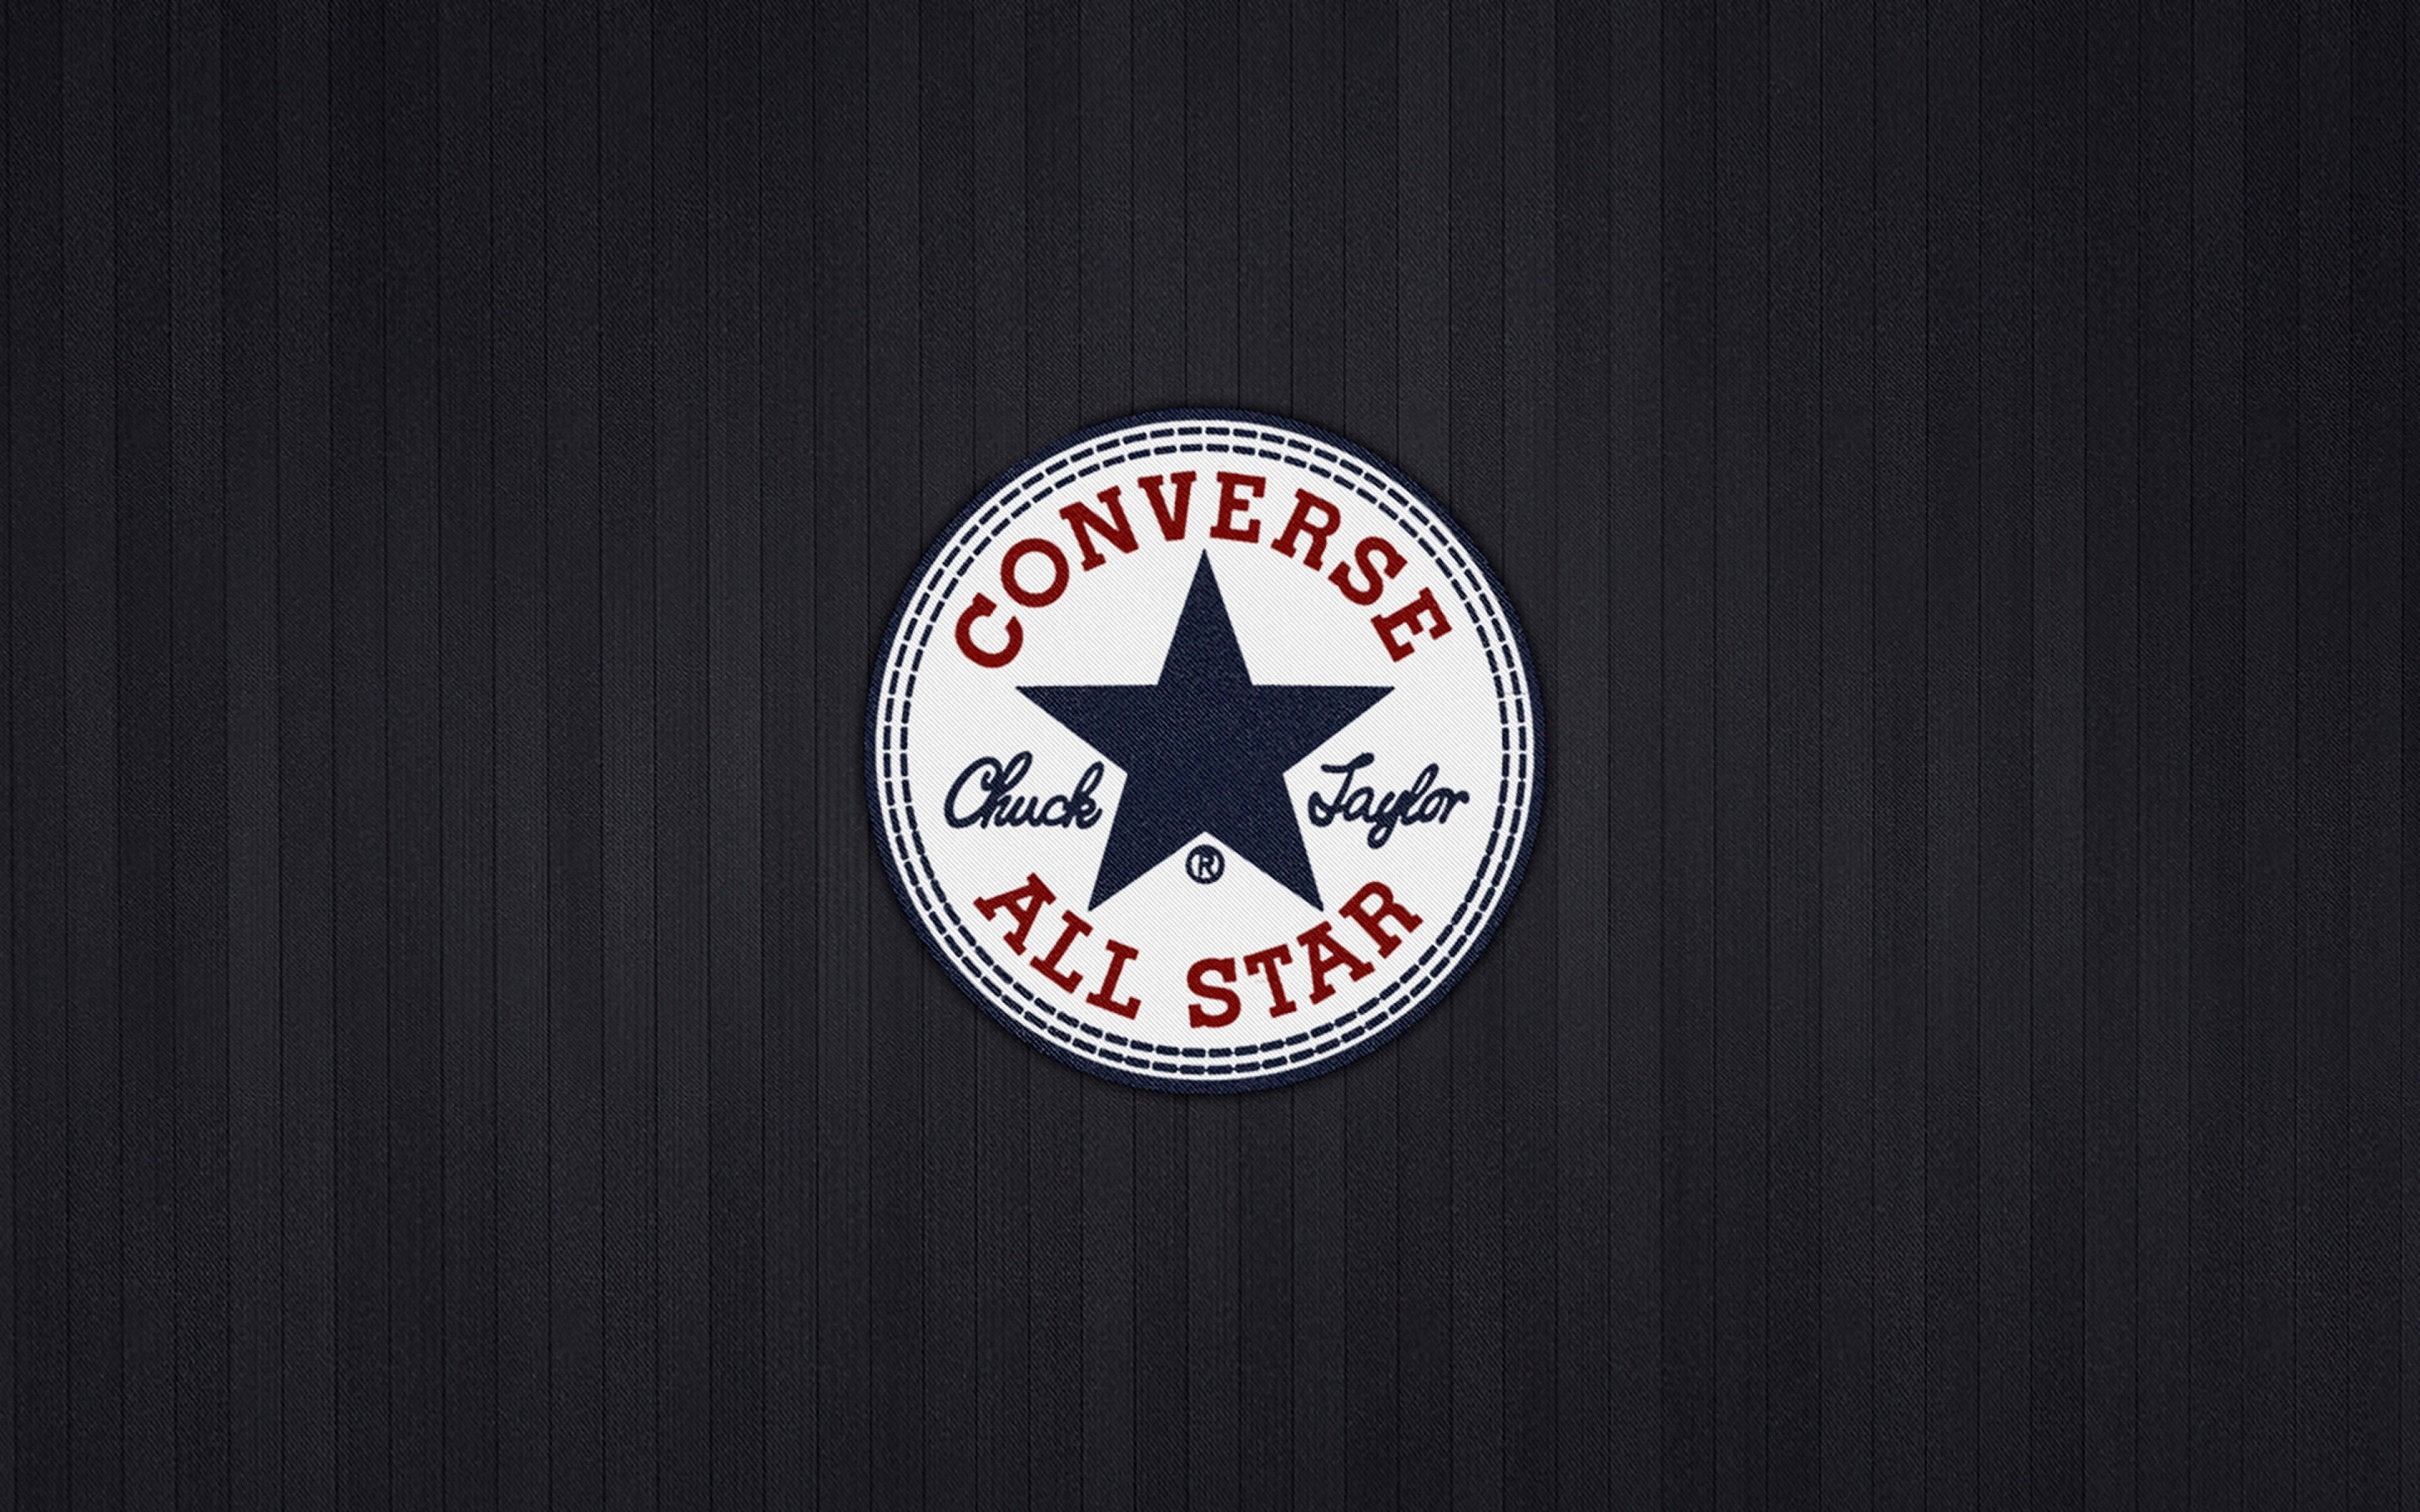 Converse All Star Wallpaper for Desktop 2880x1800